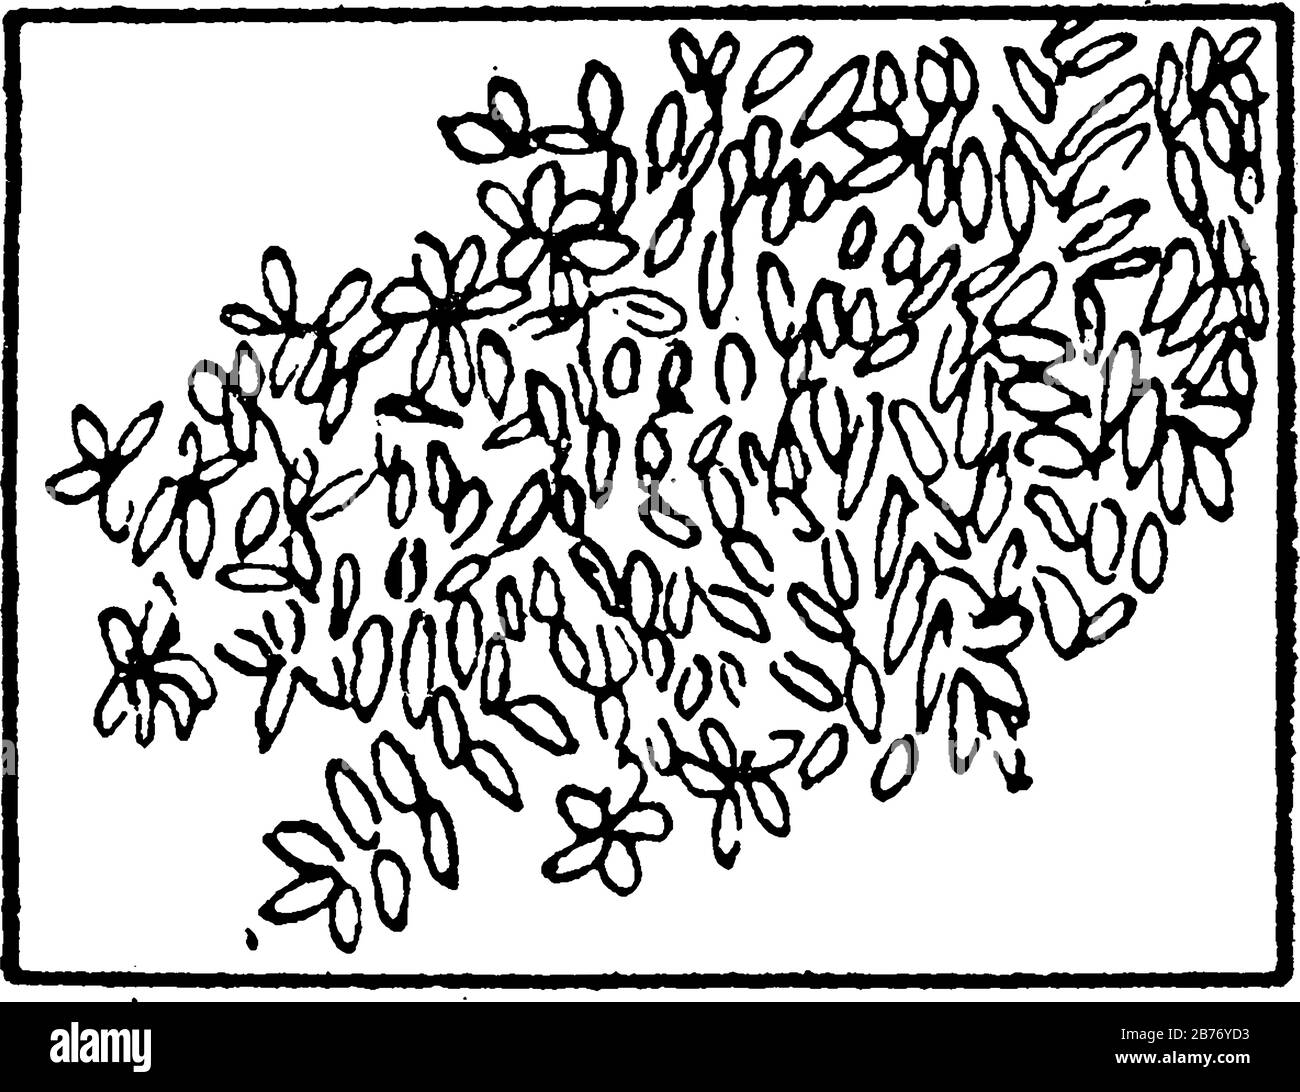 Die typische Darstellung von Mangroven auf einer topografischen Karte, Vintage-Linien-Zeichnung oder Gravurdarstellung. Stock Vektor